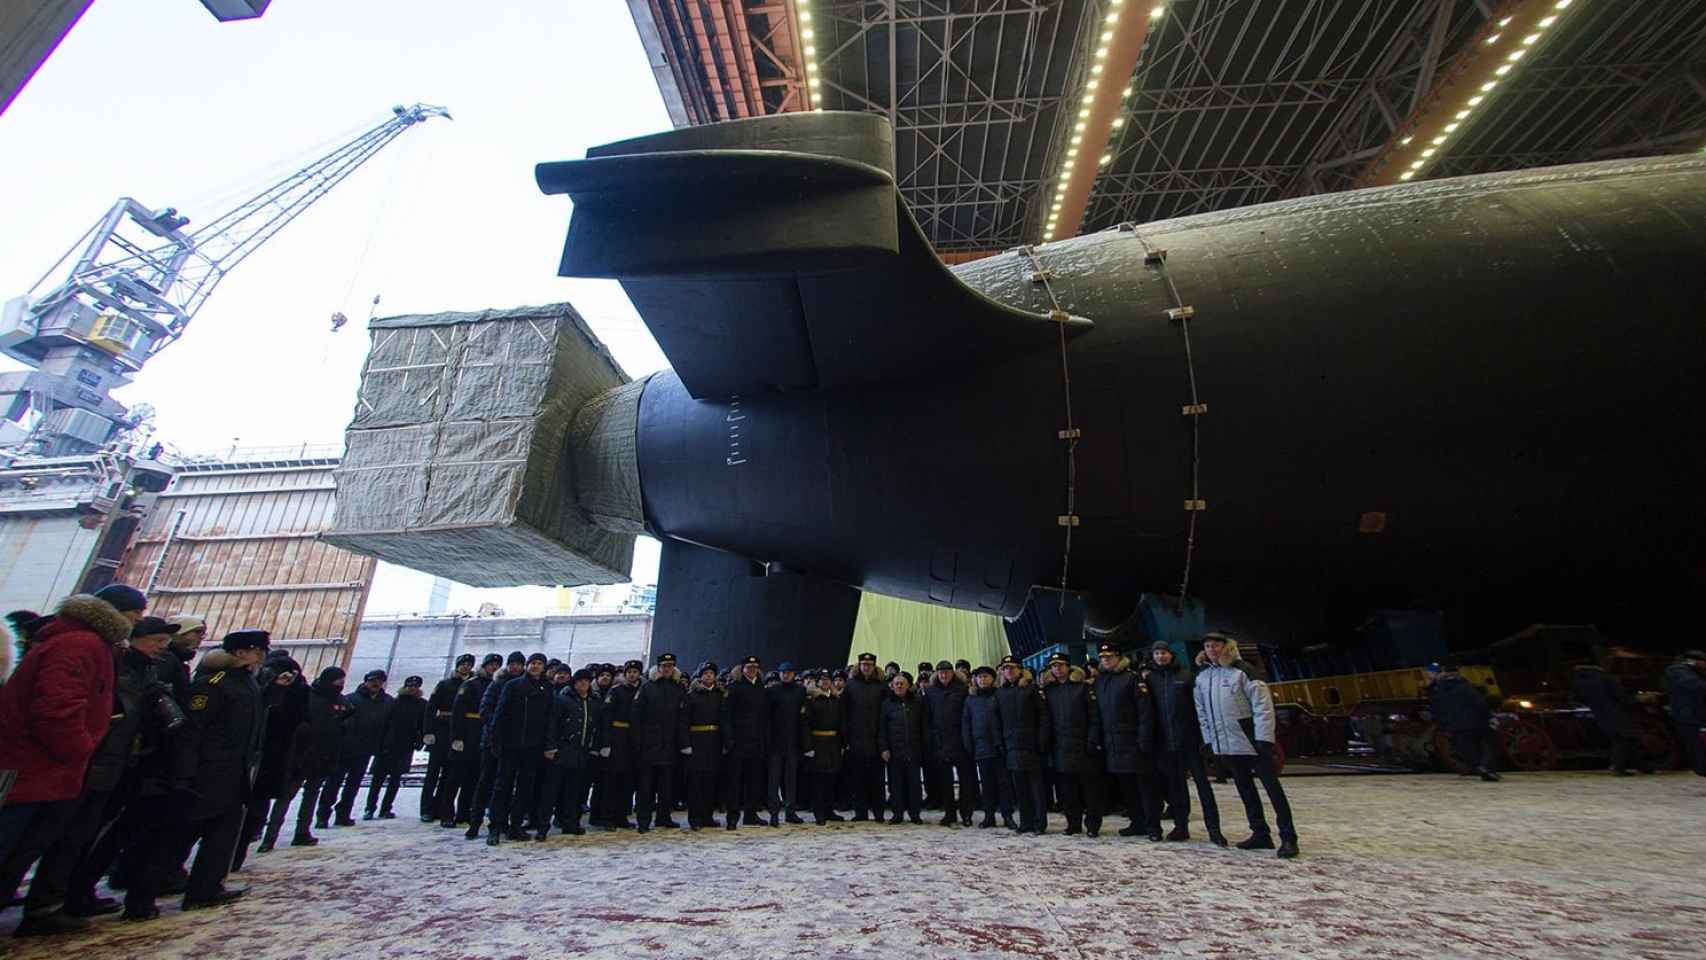 Submarino Generalissimo Suvorov en los astilleros